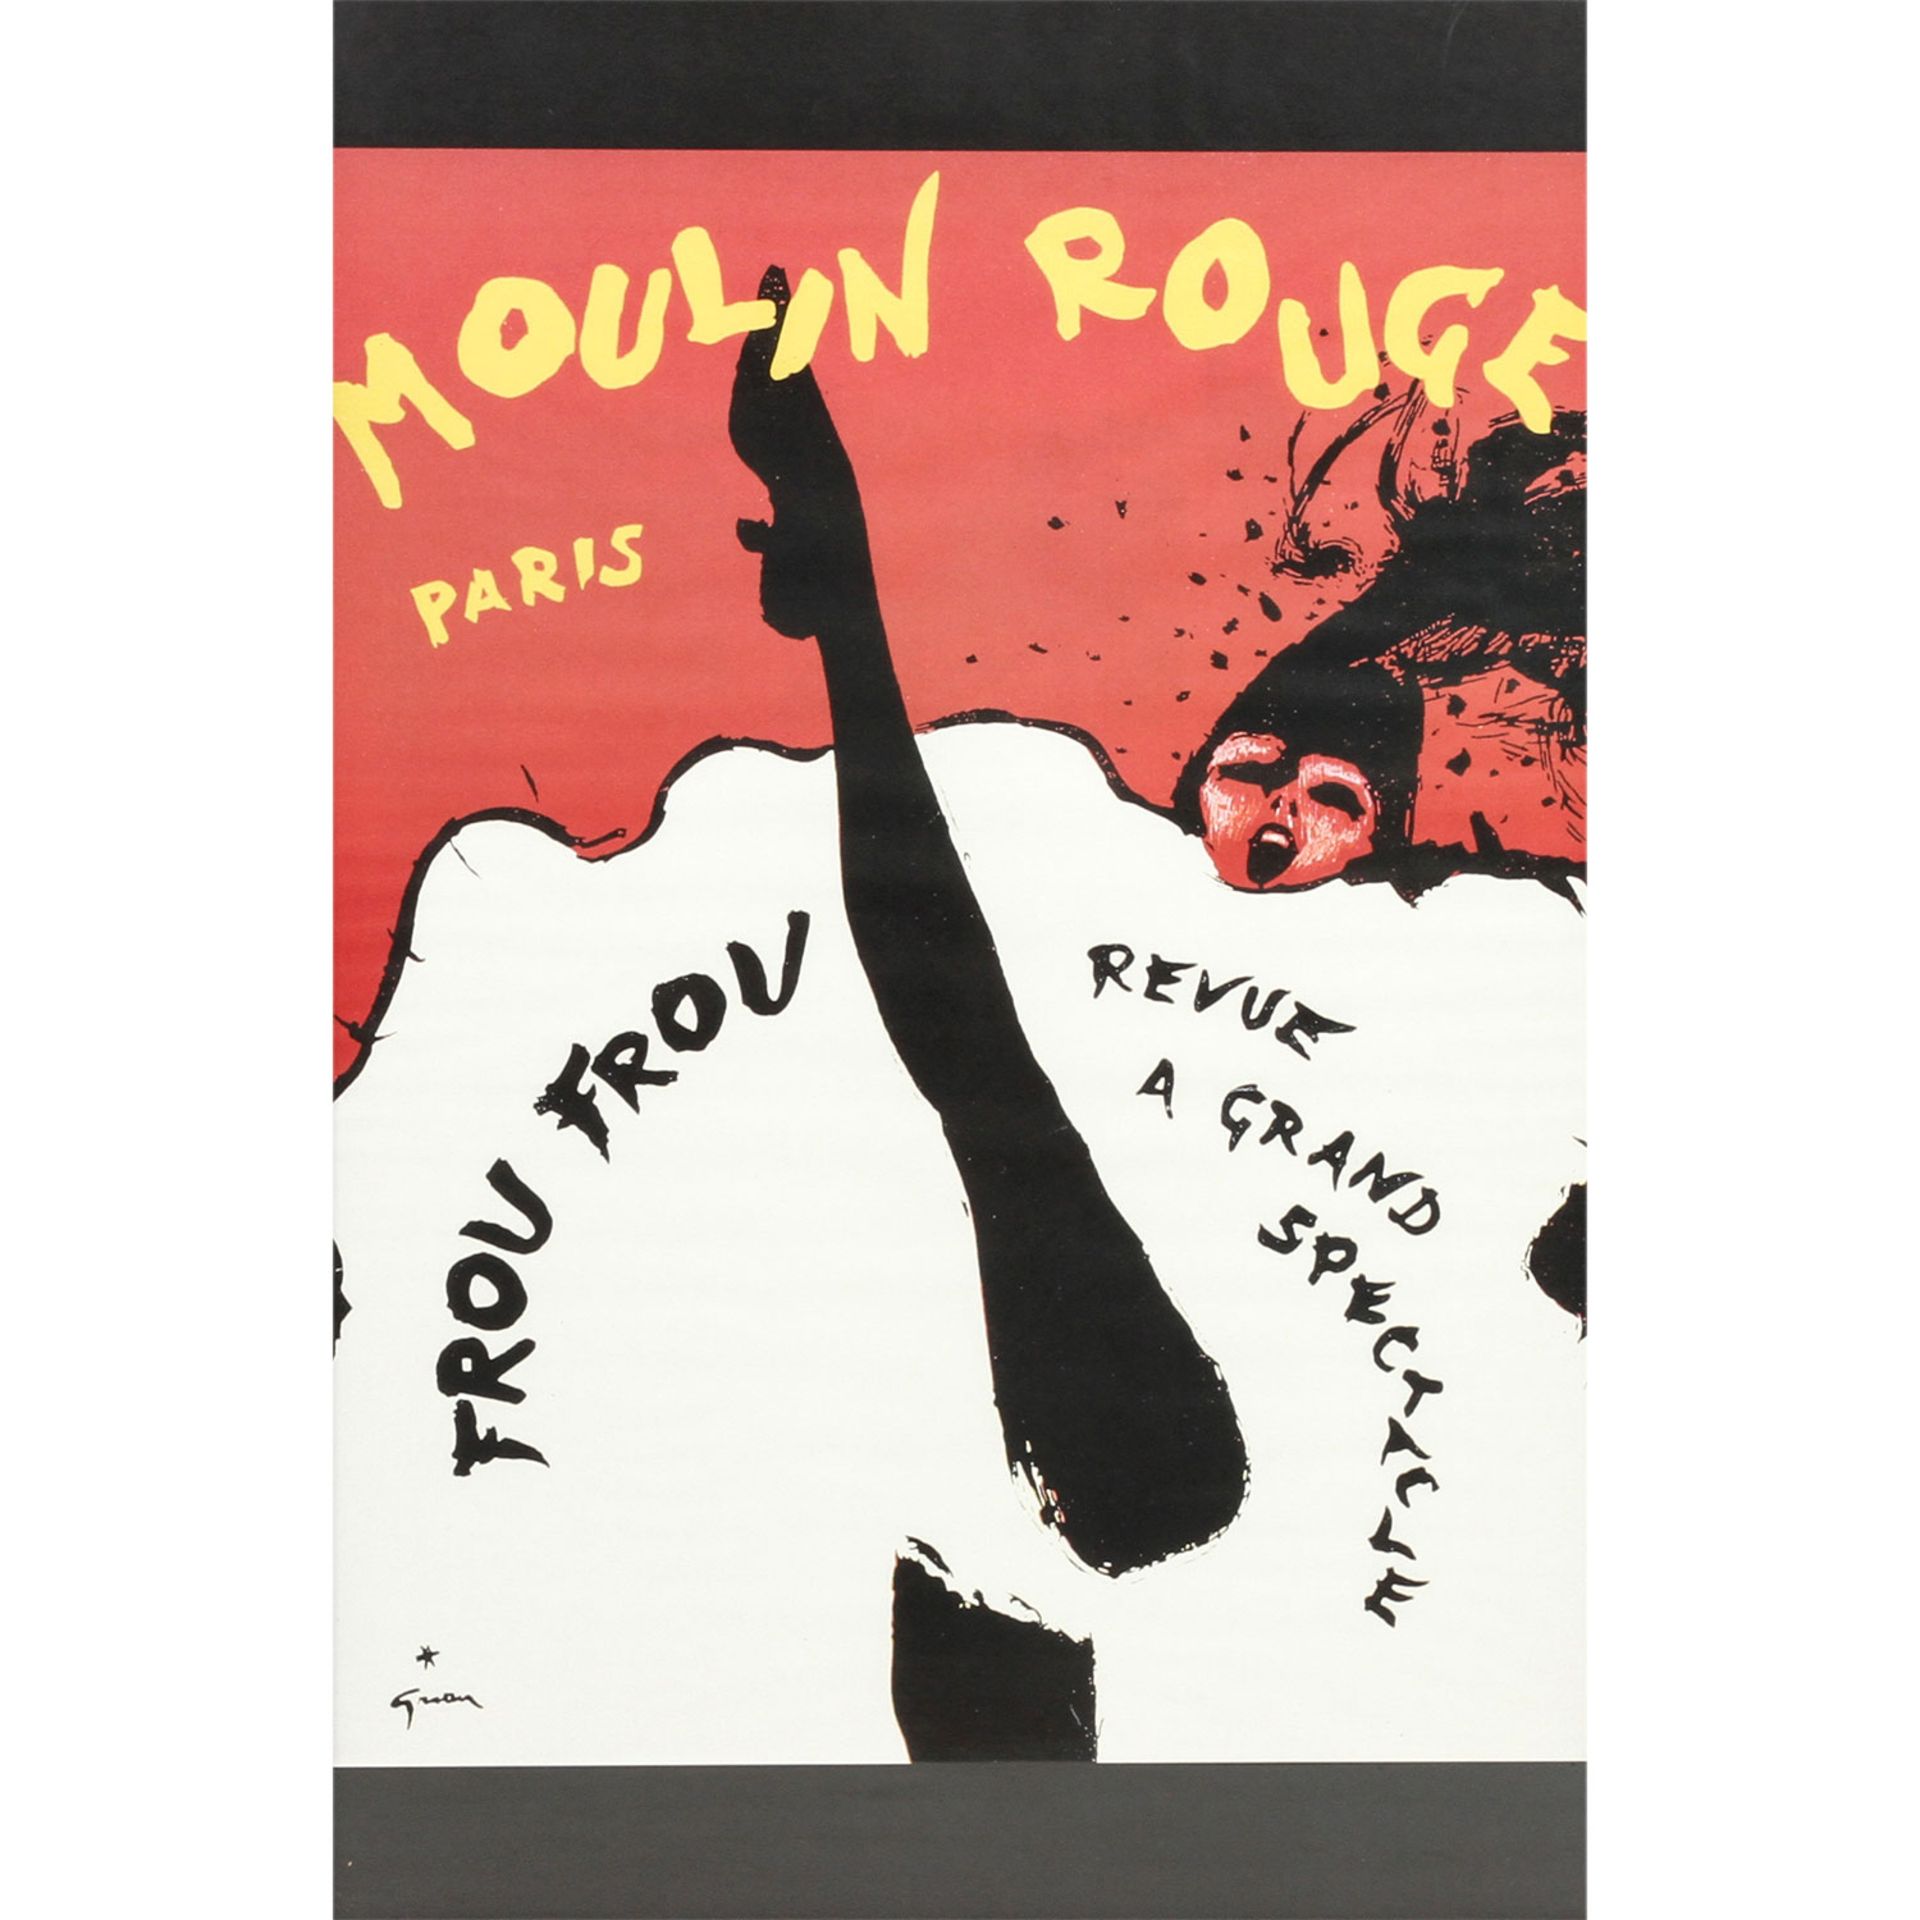 Plakat zur Show "FROU FROU Revue a grand Spectacle", Moulin Rouge, Paris 1960er Jahre,Entwurf René